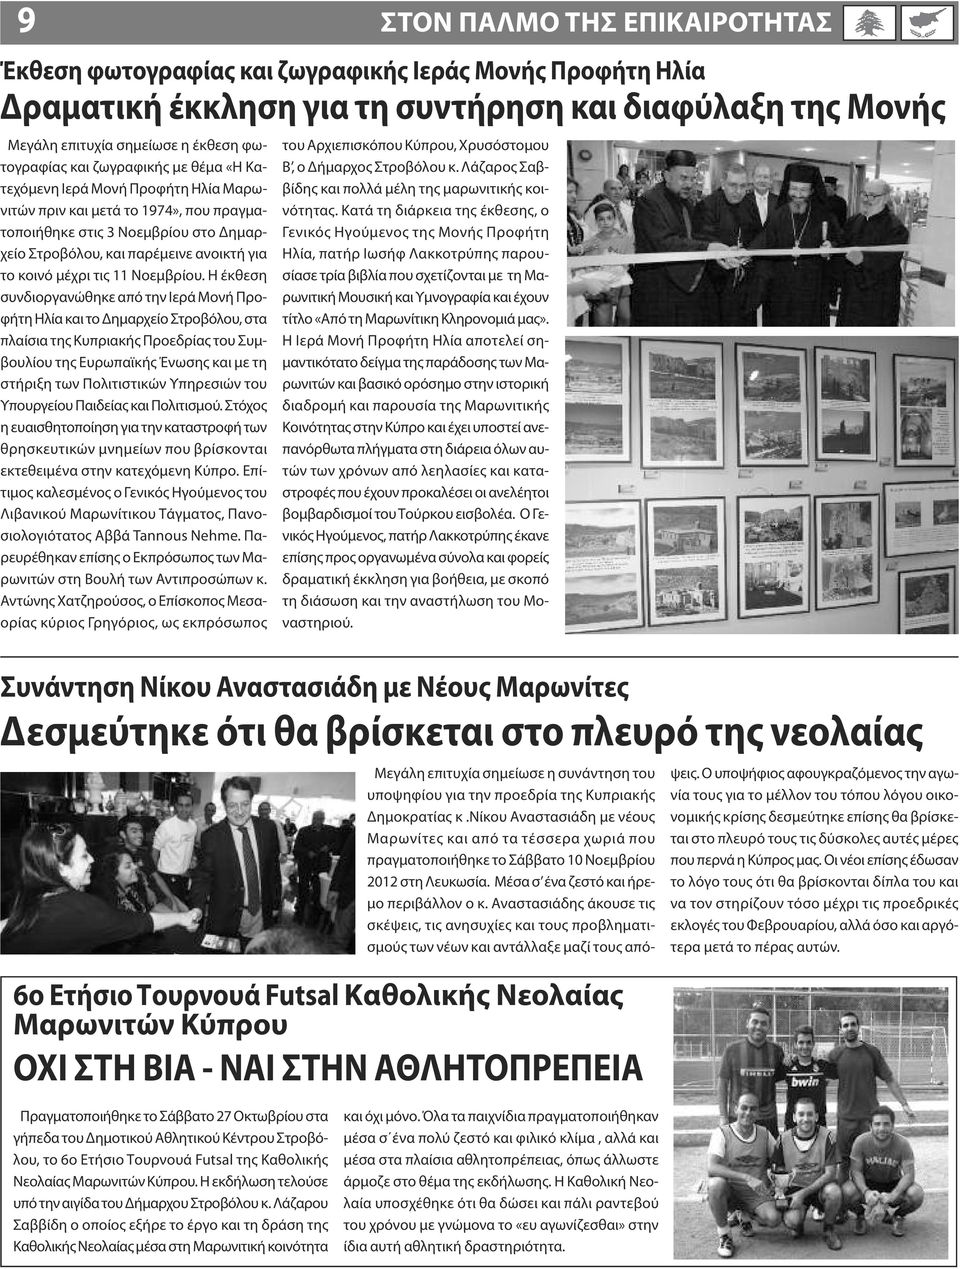 Η έκθεση συνδιοργανώθηκε από την Ιερά Μονή Προφήτη Ηλία και το Δημαρχείο Στροβόλου, στα πλαίσια της Κυπριακής Προεδρίας του Συμβουλίου της Ευρωπαϊκής Ένωσης και με τη στήριξη των Πολιτιστικών